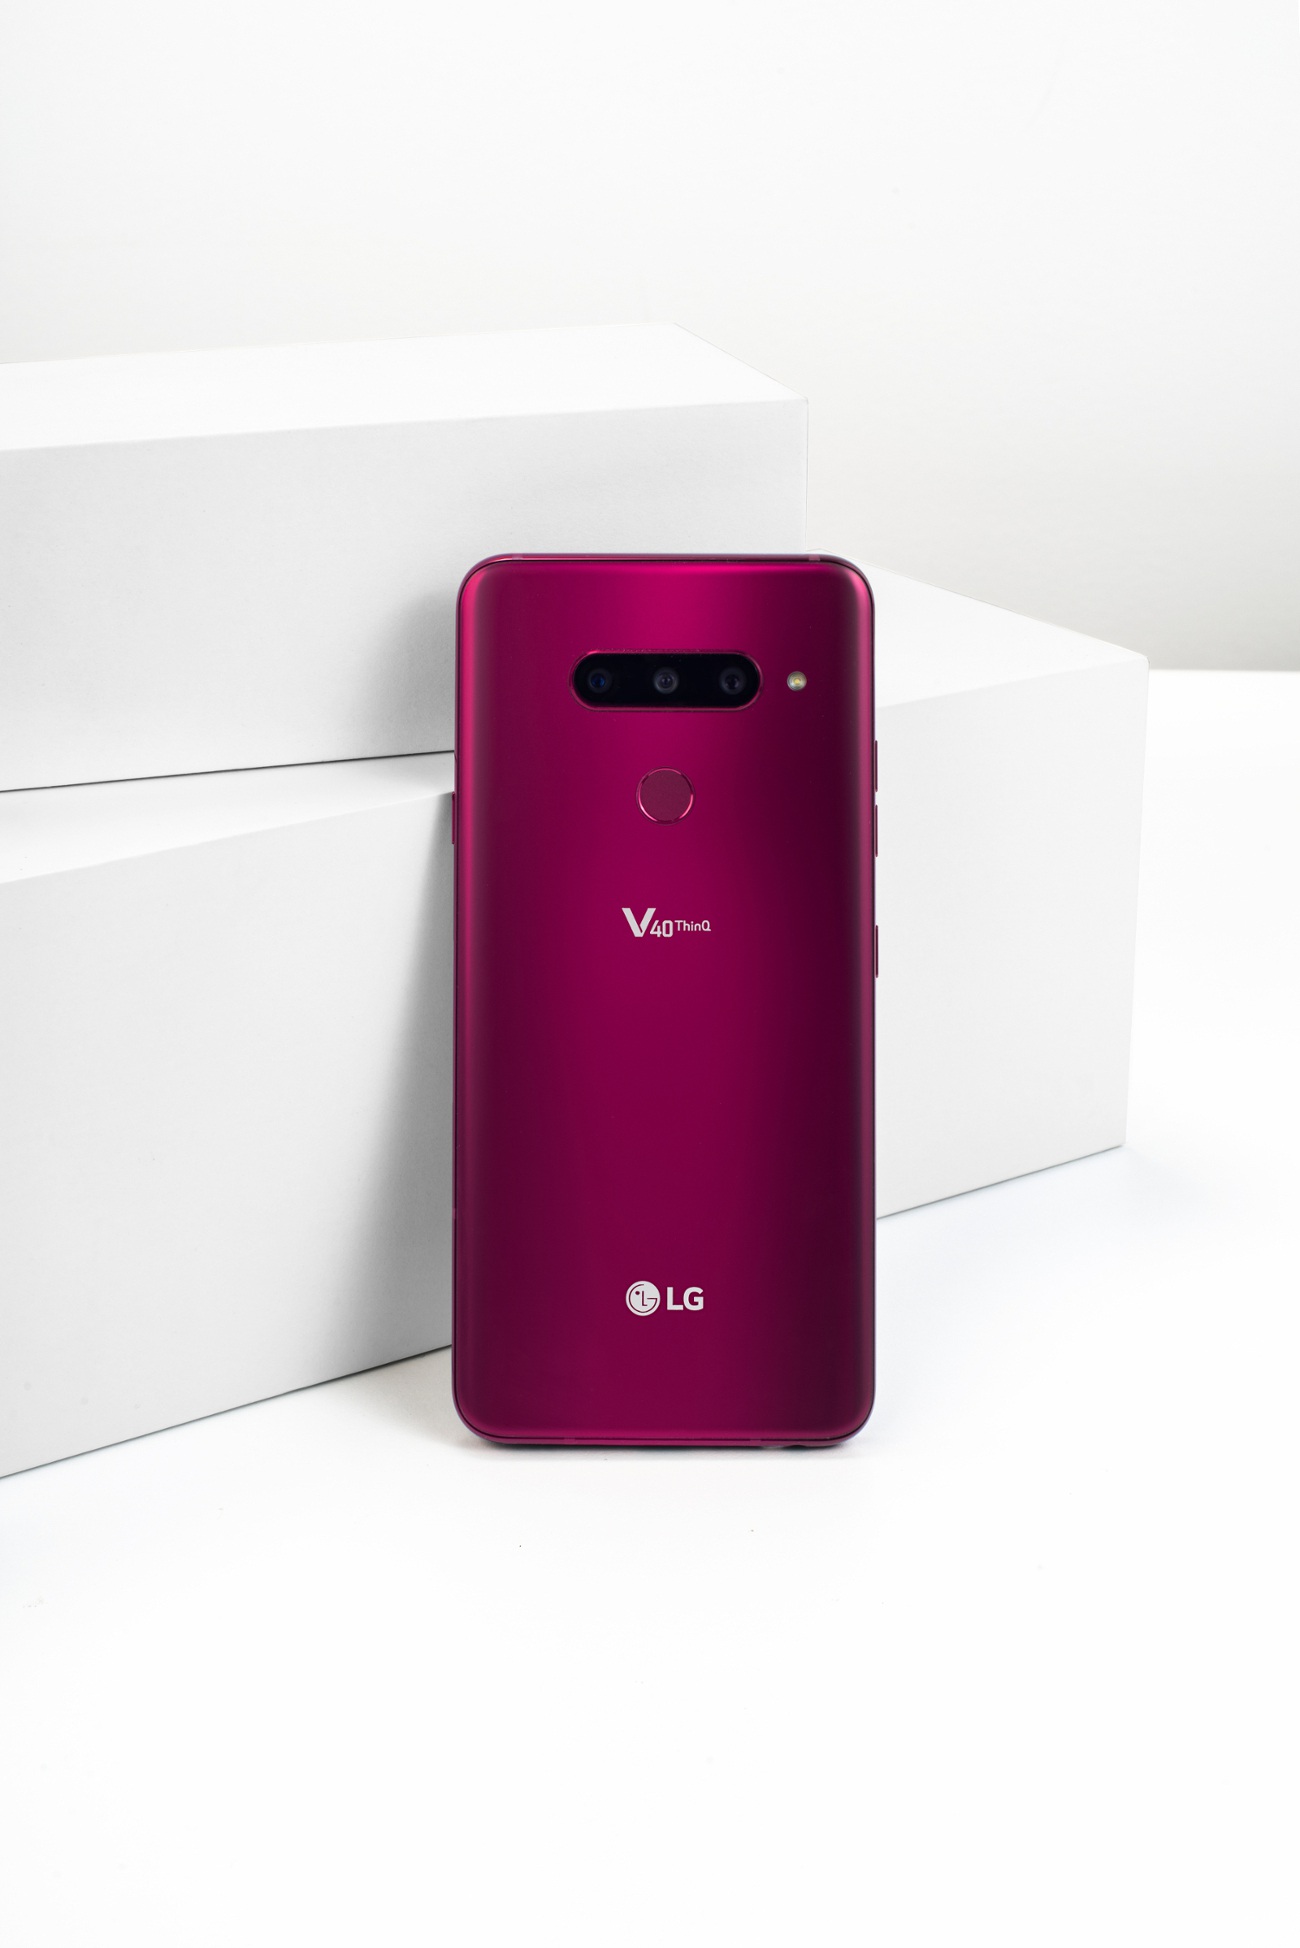 LG V40 ThinQ, un móvil con cinco cámaras para todo tipo de situaciones